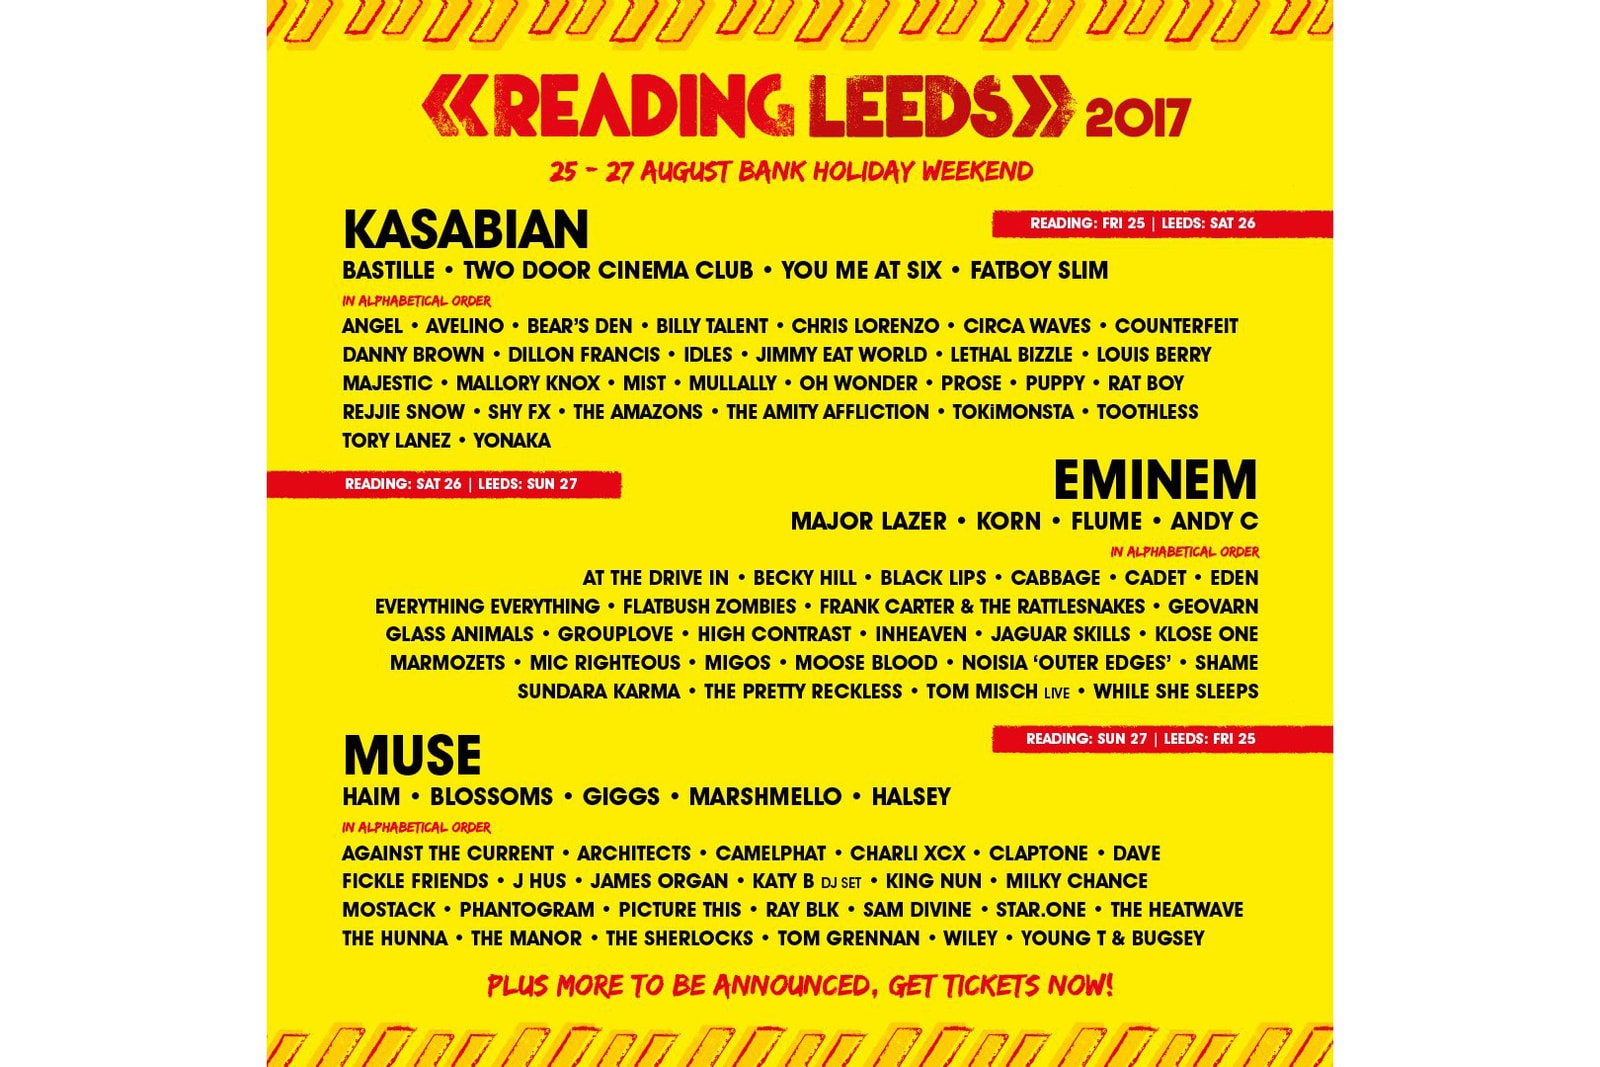 eminem will headliner Reading & Leeds festival